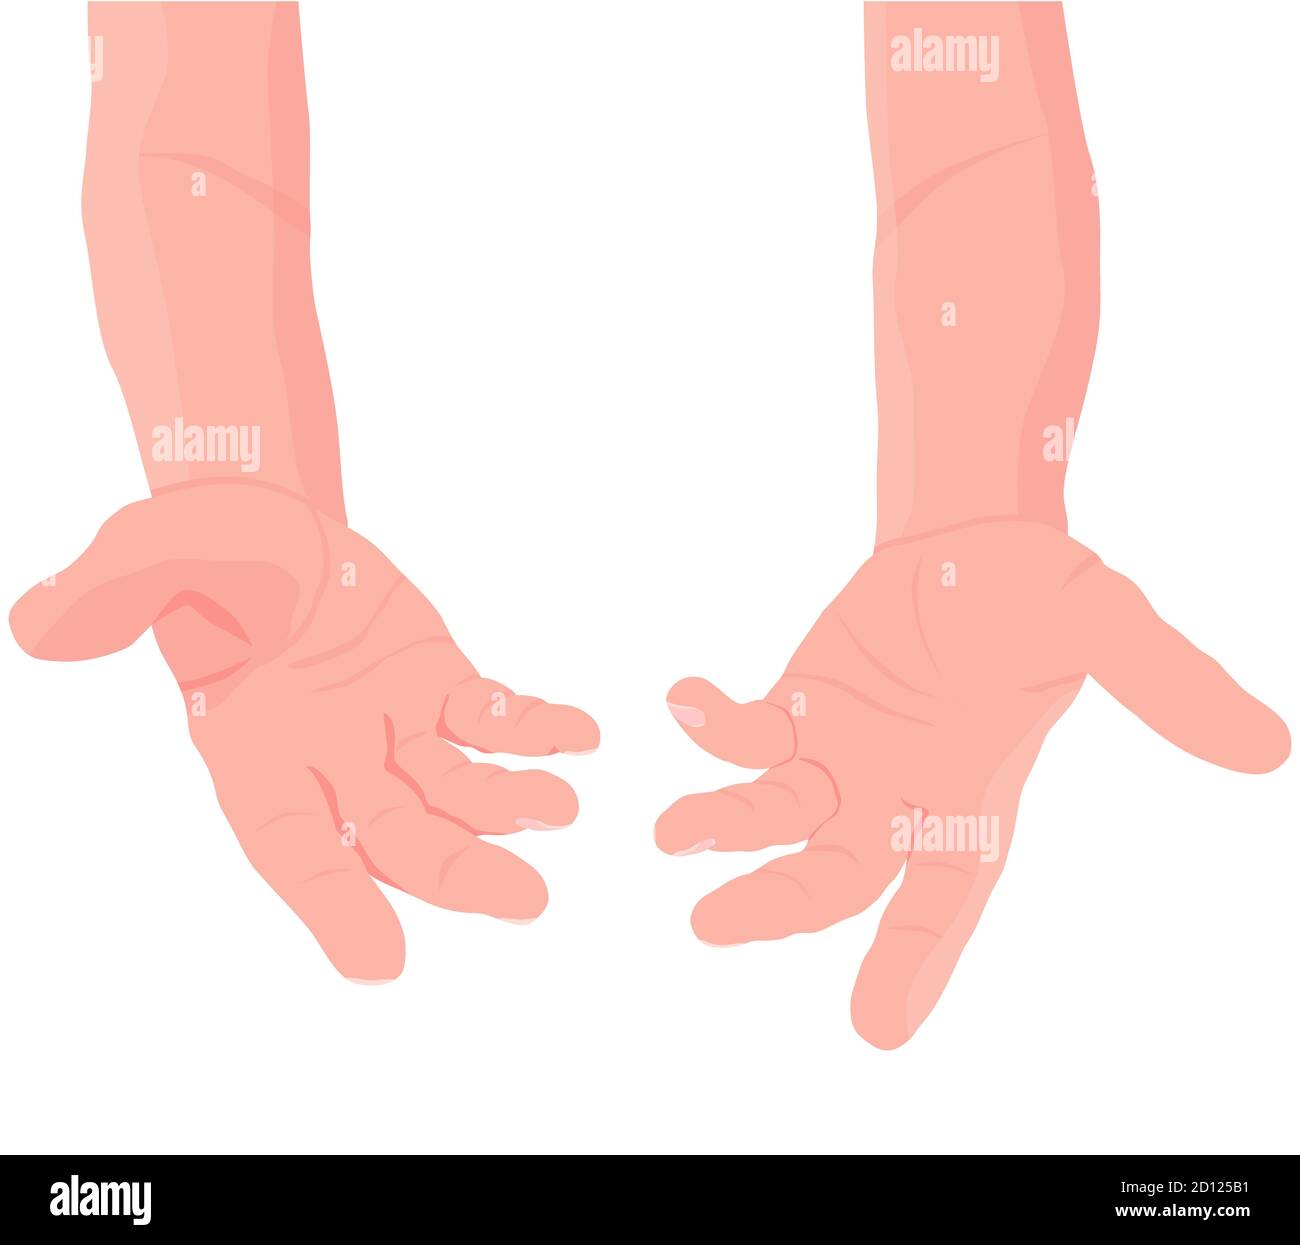 Mains ouvertes humaines. Paire de mains d'hommes avec paume exposée, demande ou don. Illustration plate. Vecteur Illustration de Vecteur